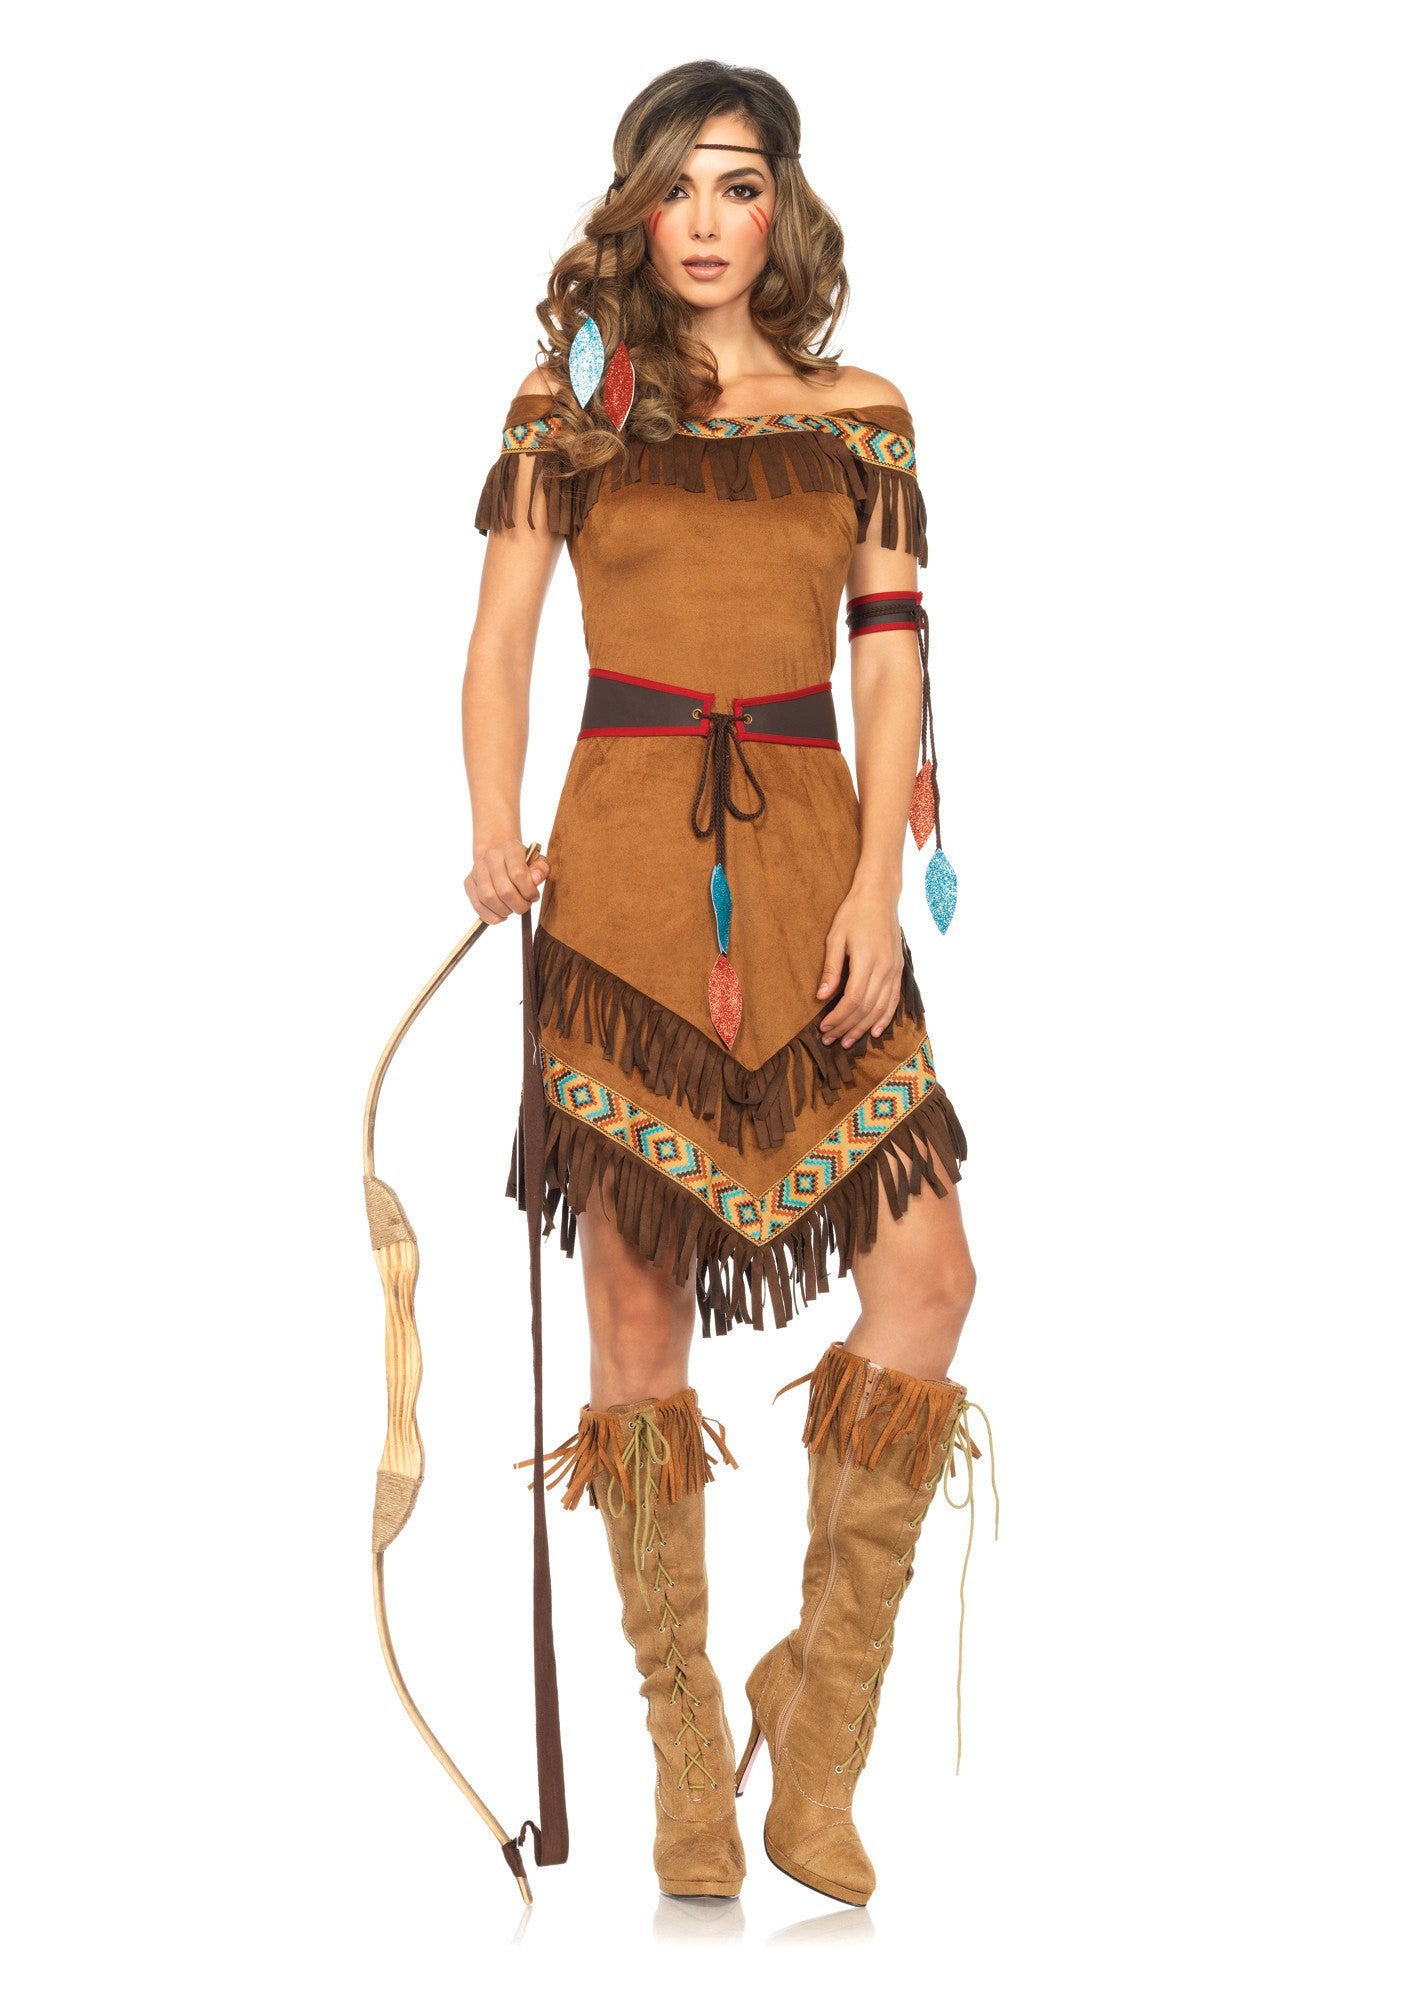 Costume - Native Princess